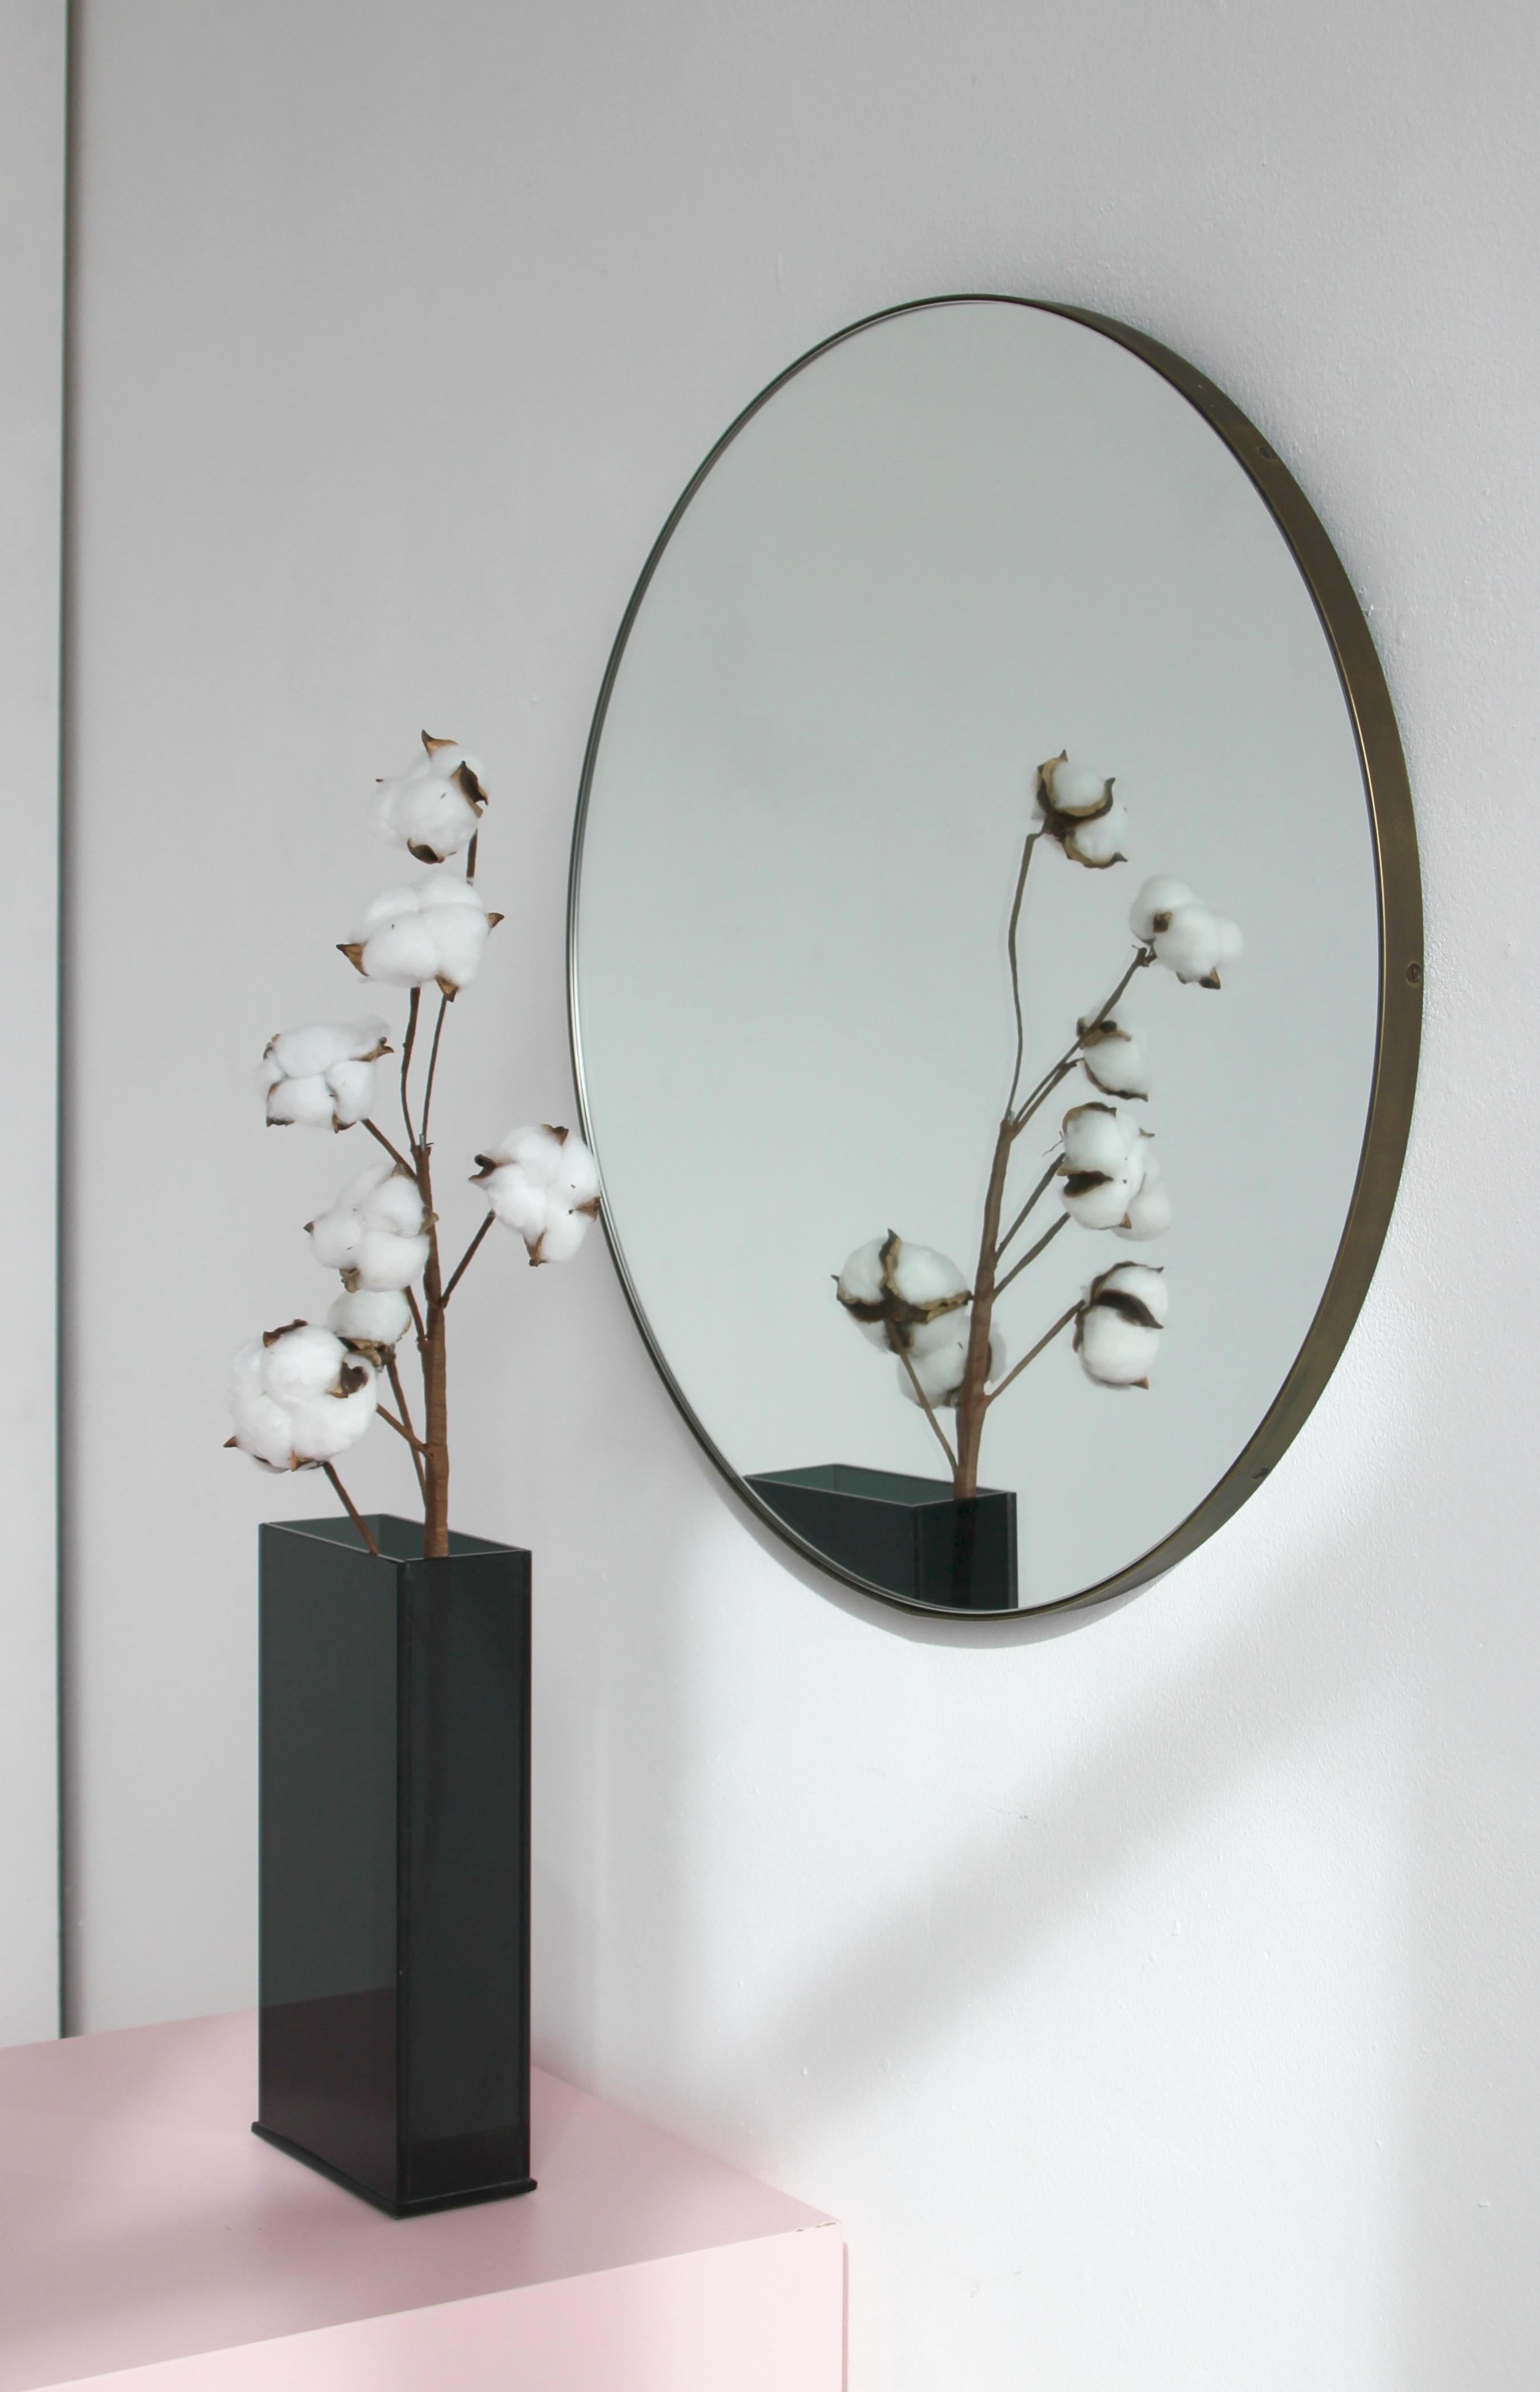 Miroir rond minimaliste Orbis™ avec un cadre en laiton massif à la finition patinée bronze. Conçu et fabriqué à la main à Londres, au Royaume-Uni.

Les détails et la finition, y compris les vis en laiton visibles, soulignent l'aspect artisanal et la